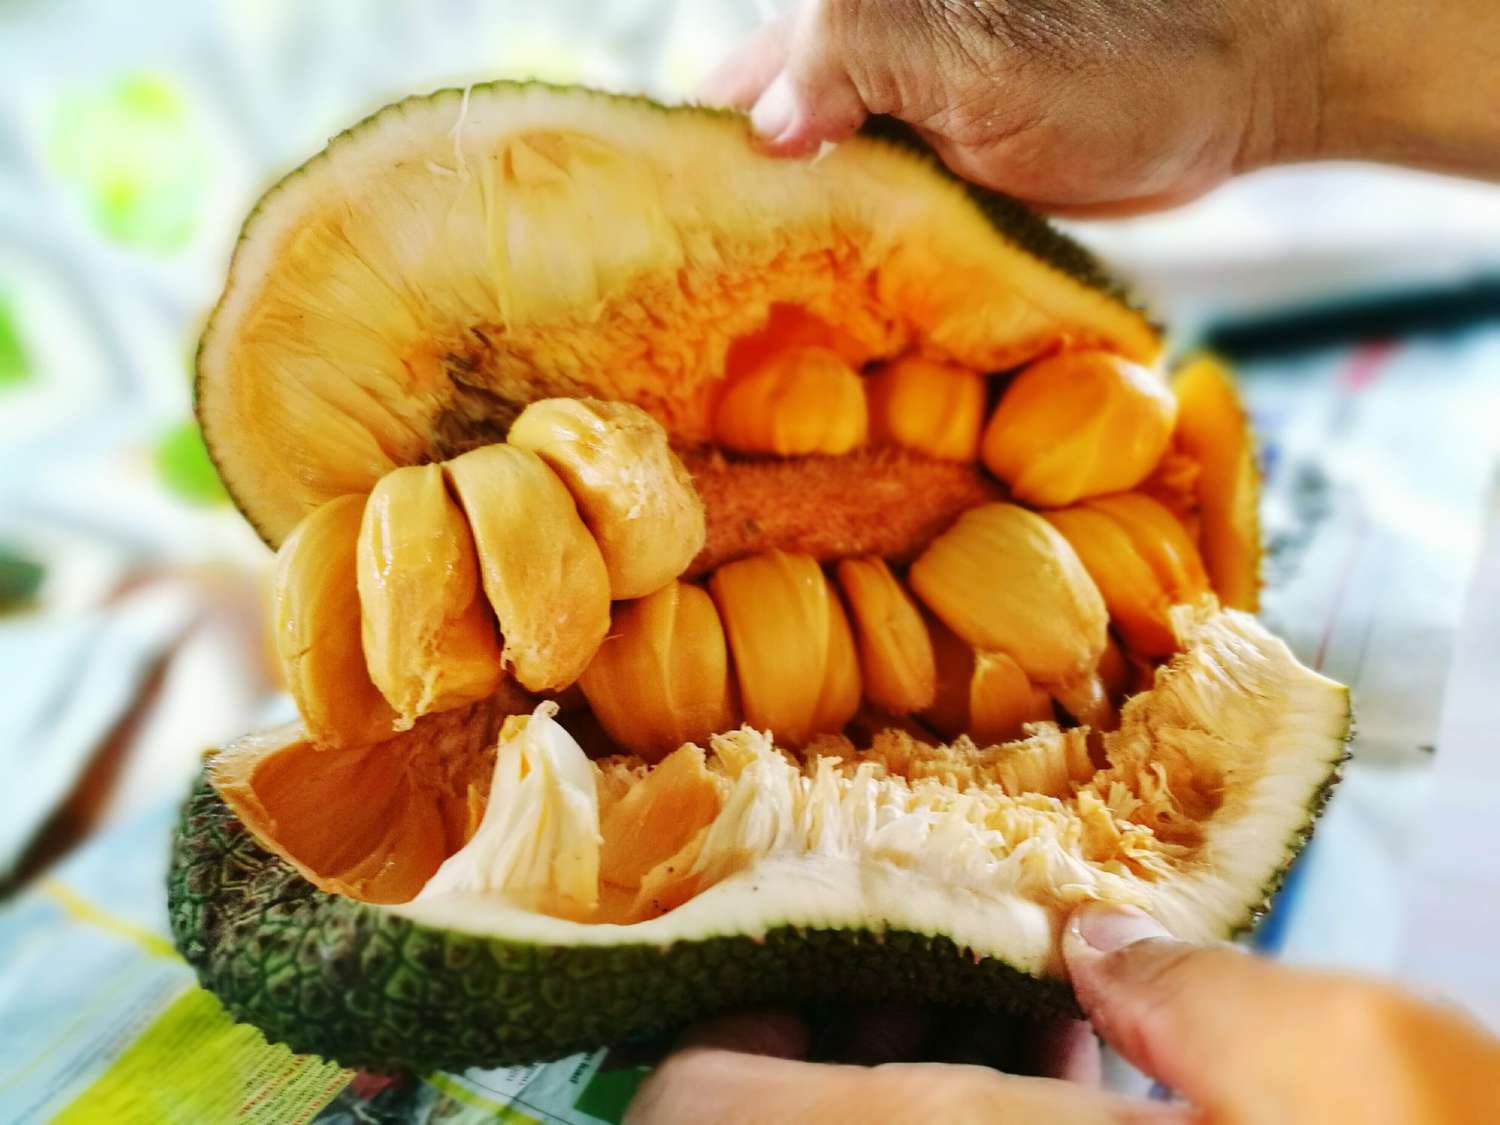 hands holding open jackfruit